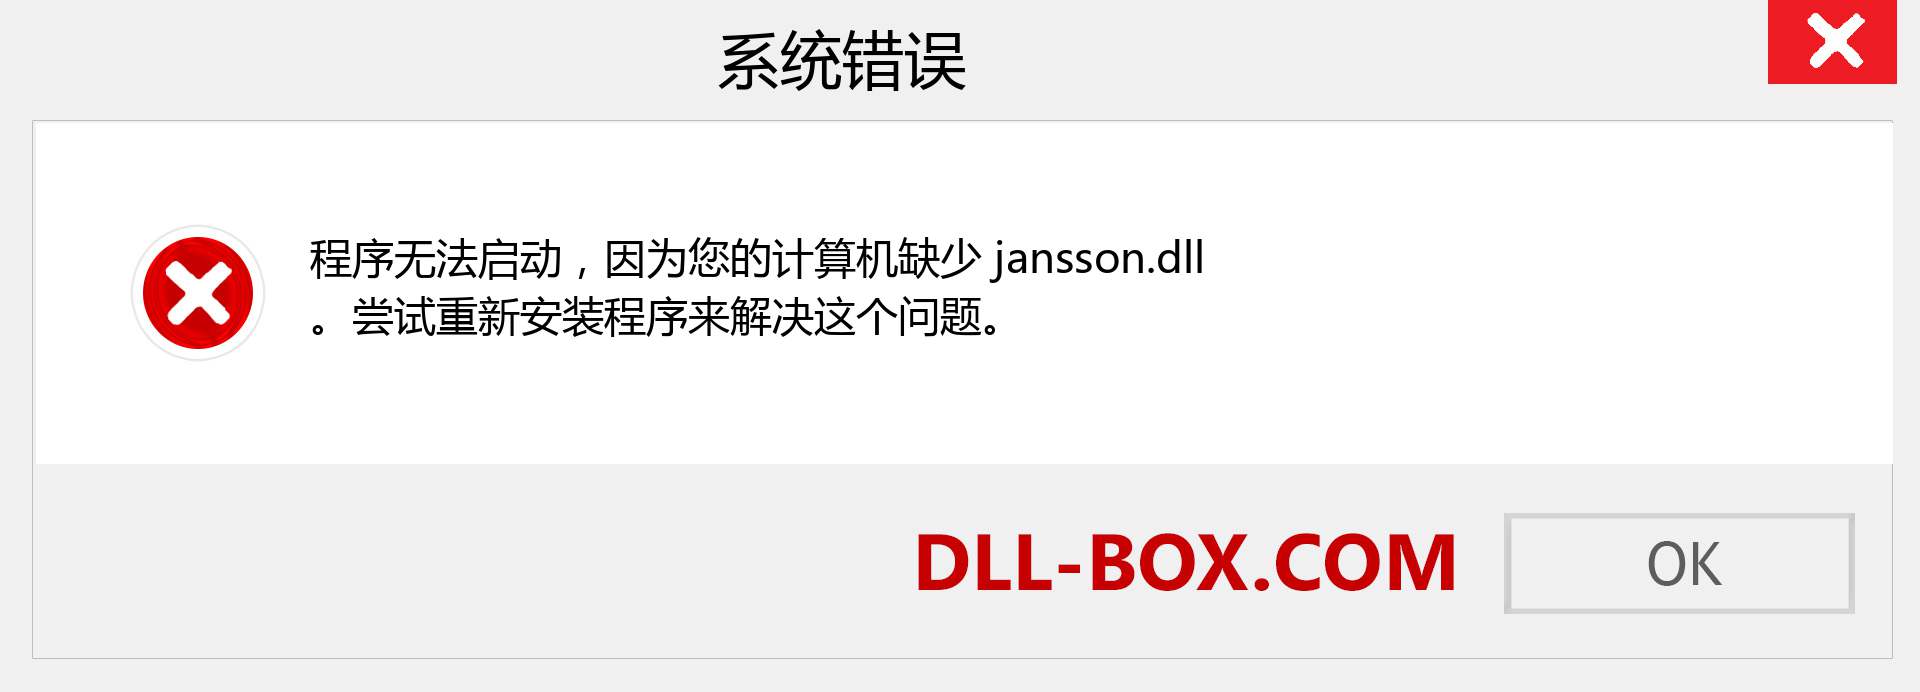 jansson.dll 文件丢失？。 适用于 Windows 7、8、10 的下载 - 修复 Windows、照片、图像上的 jansson dll 丢失错误